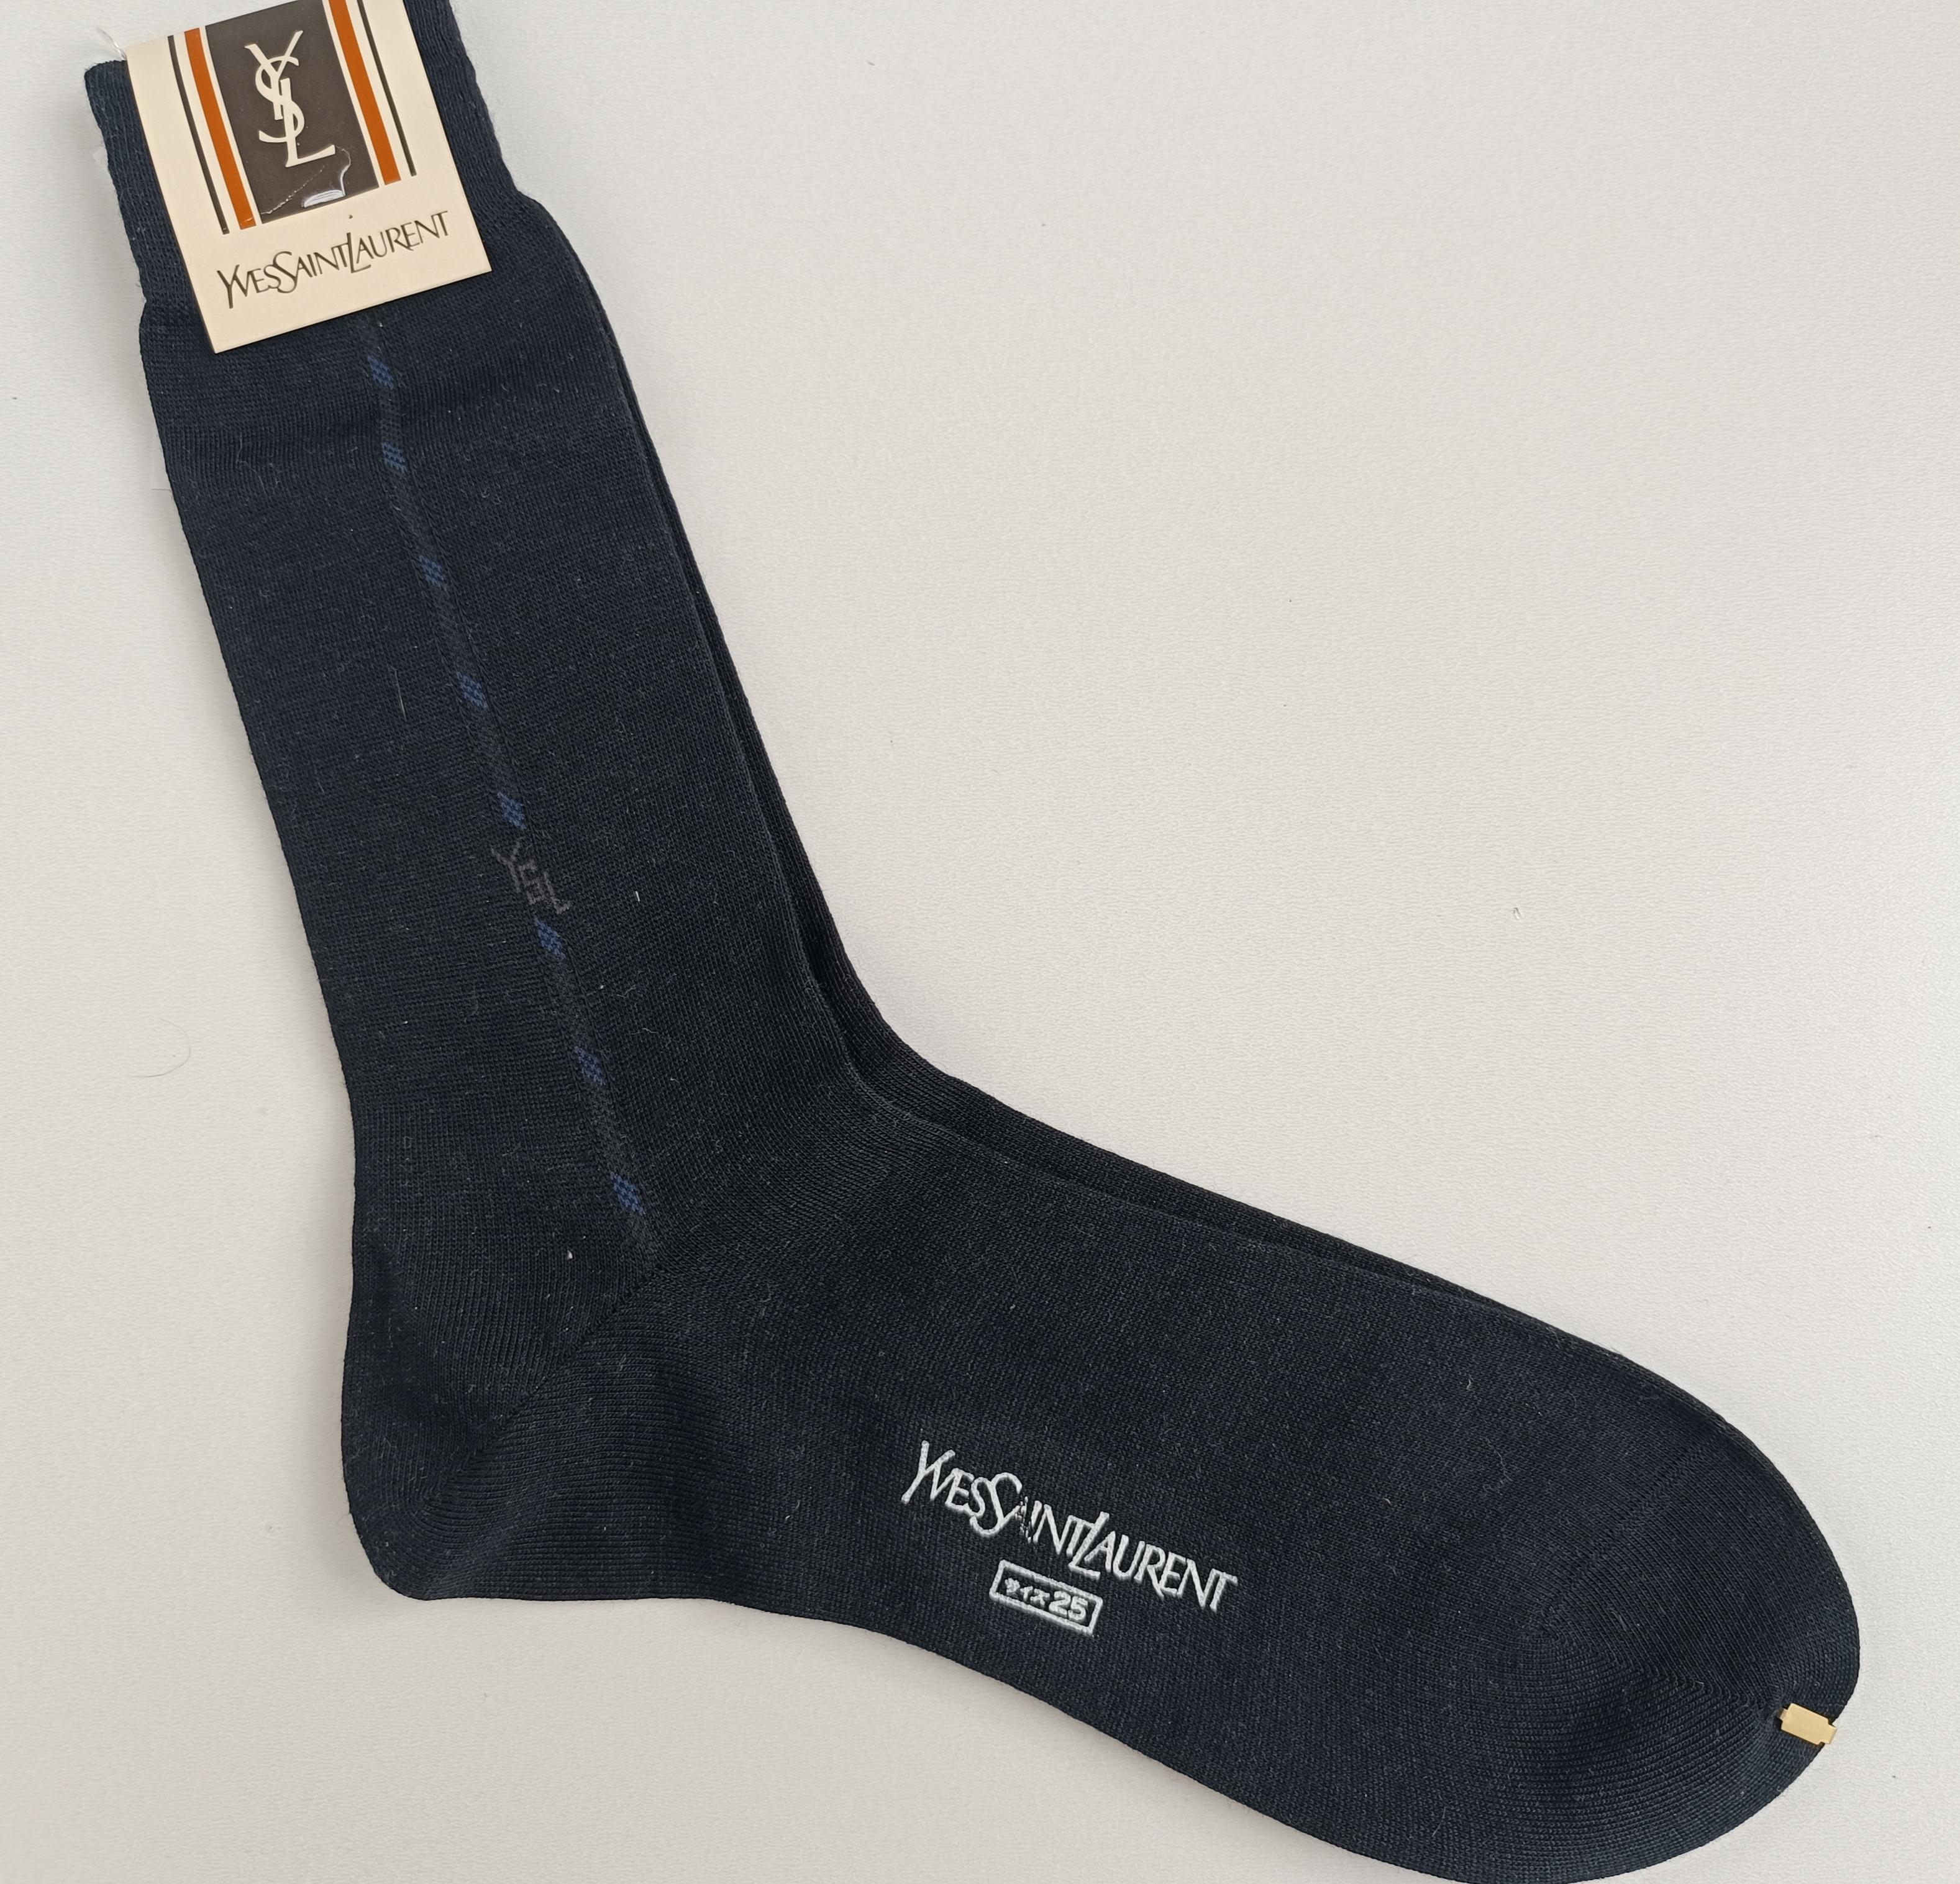 Authentic Yves Saint Laurent Vintage Men’s Socks For Sale 6